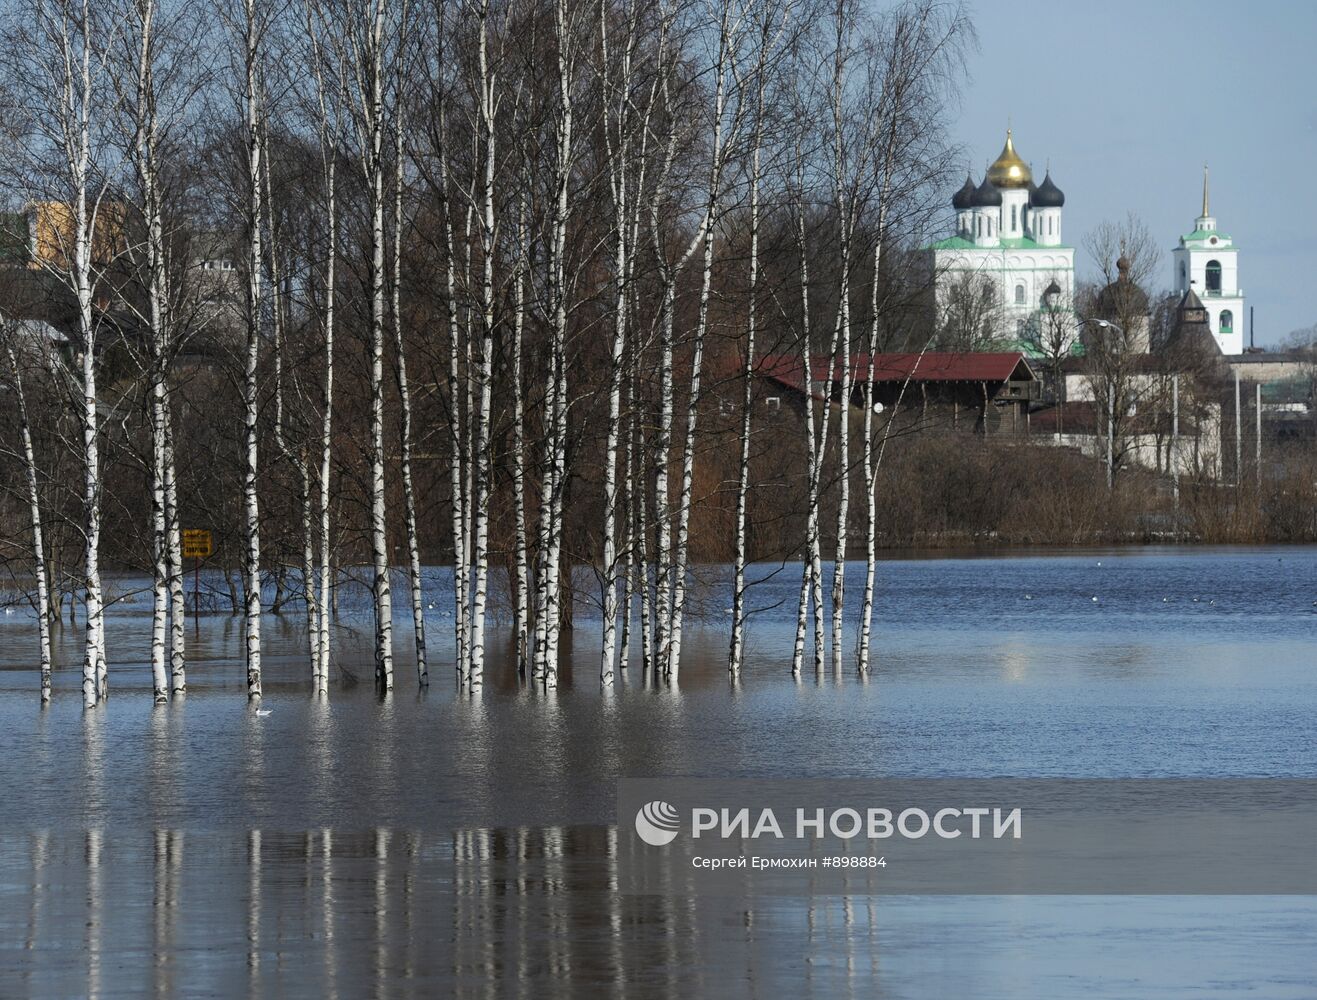 Вид на Псковский кремль со стороны реки Великой